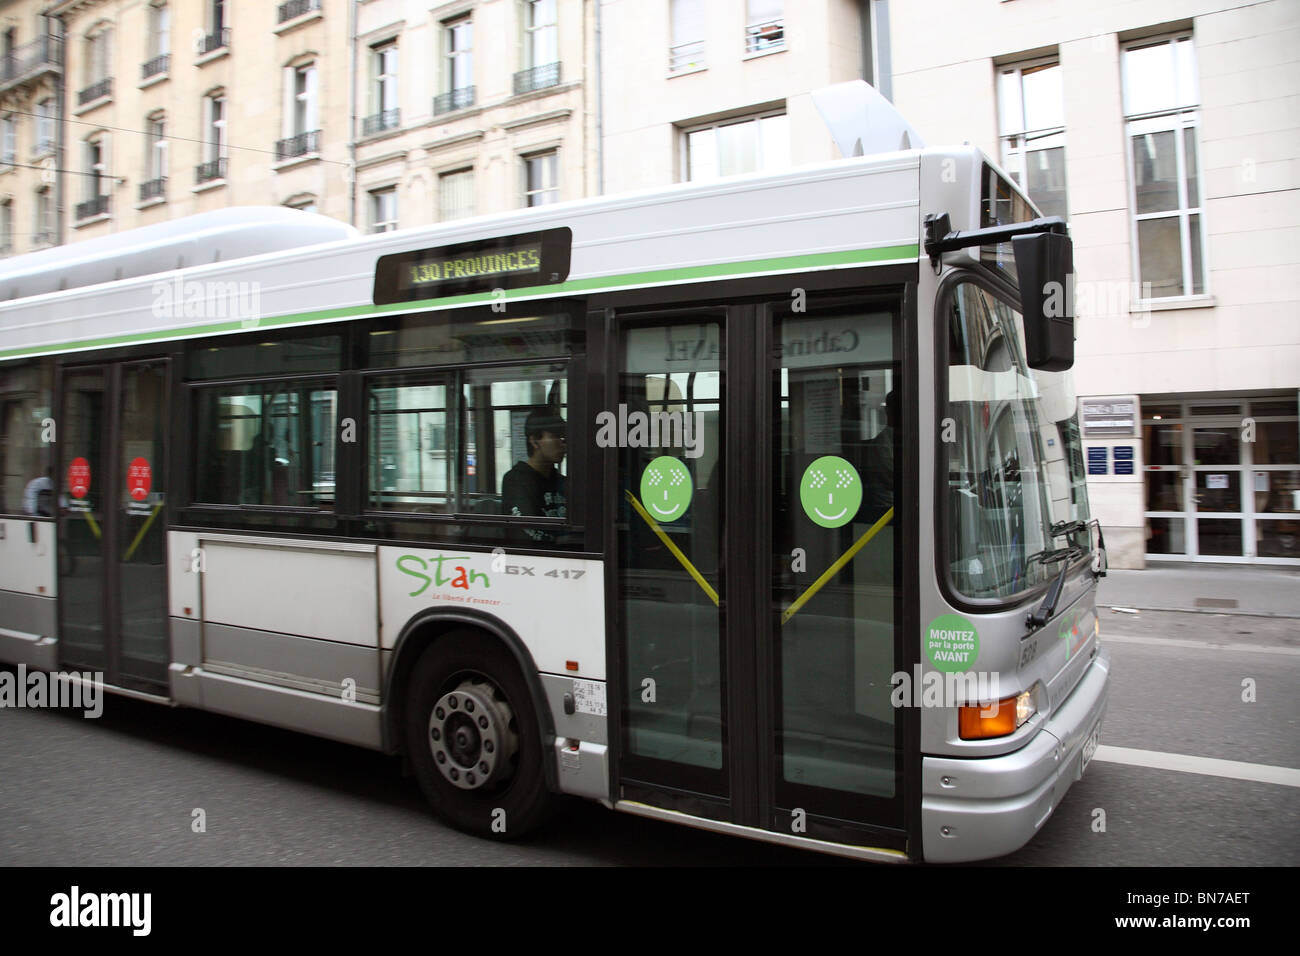 Un bus numéro 130 Provinces, Nancy, France Banque D'Images